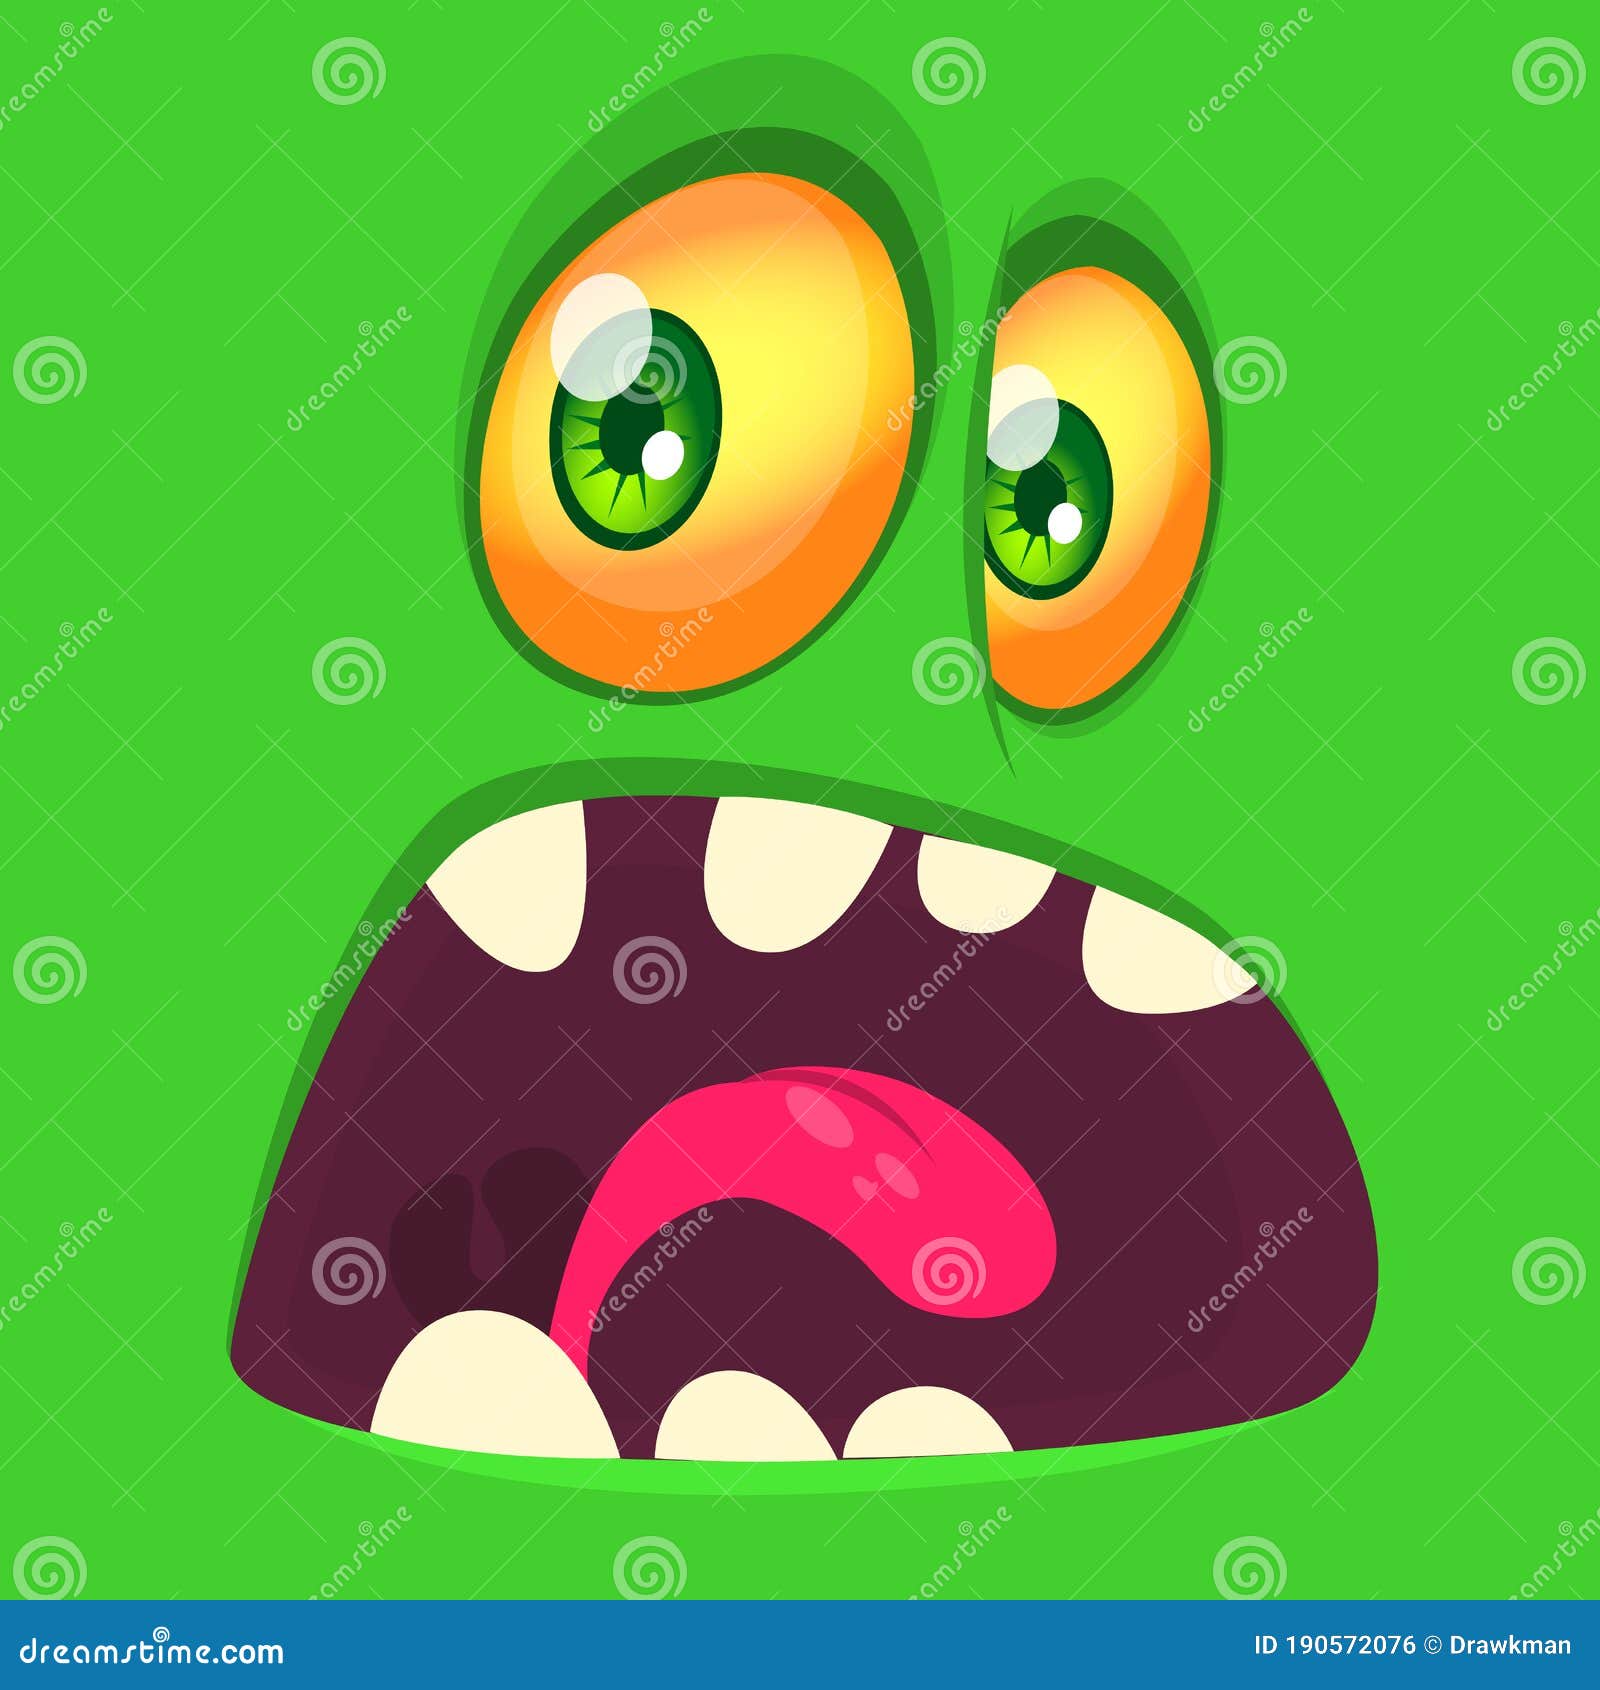 Funny cartoon monster face Vector monster avatar  Stock Illustration  67035162  PIXTA